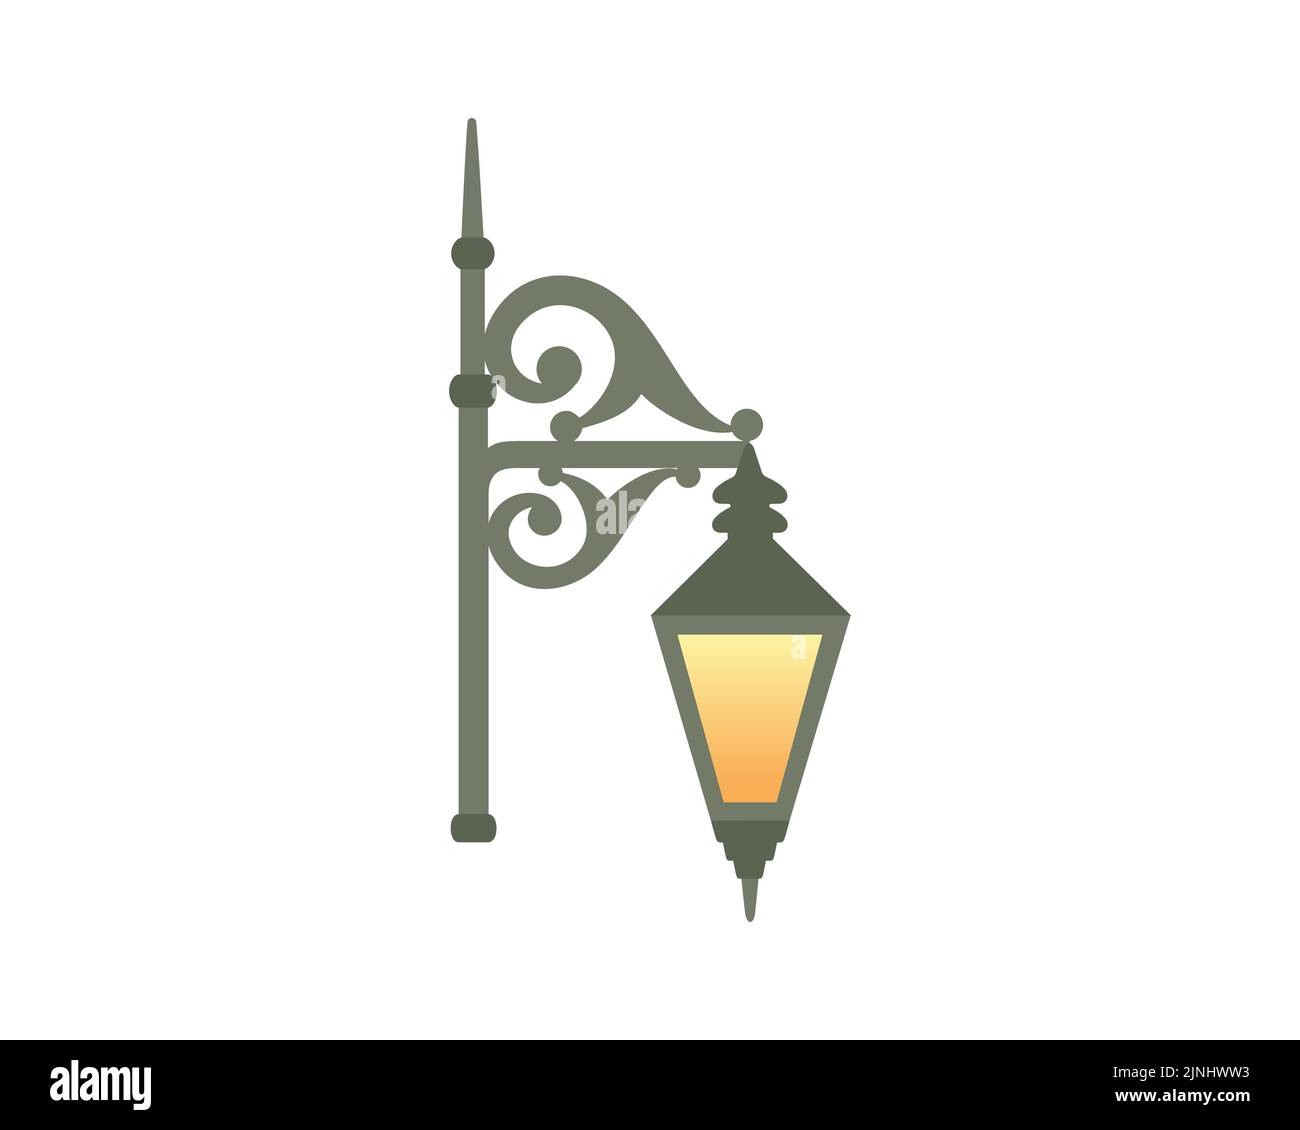 Upper Part of Victorian Street Light or Victorian Street Lamp Illustration Stock Vector